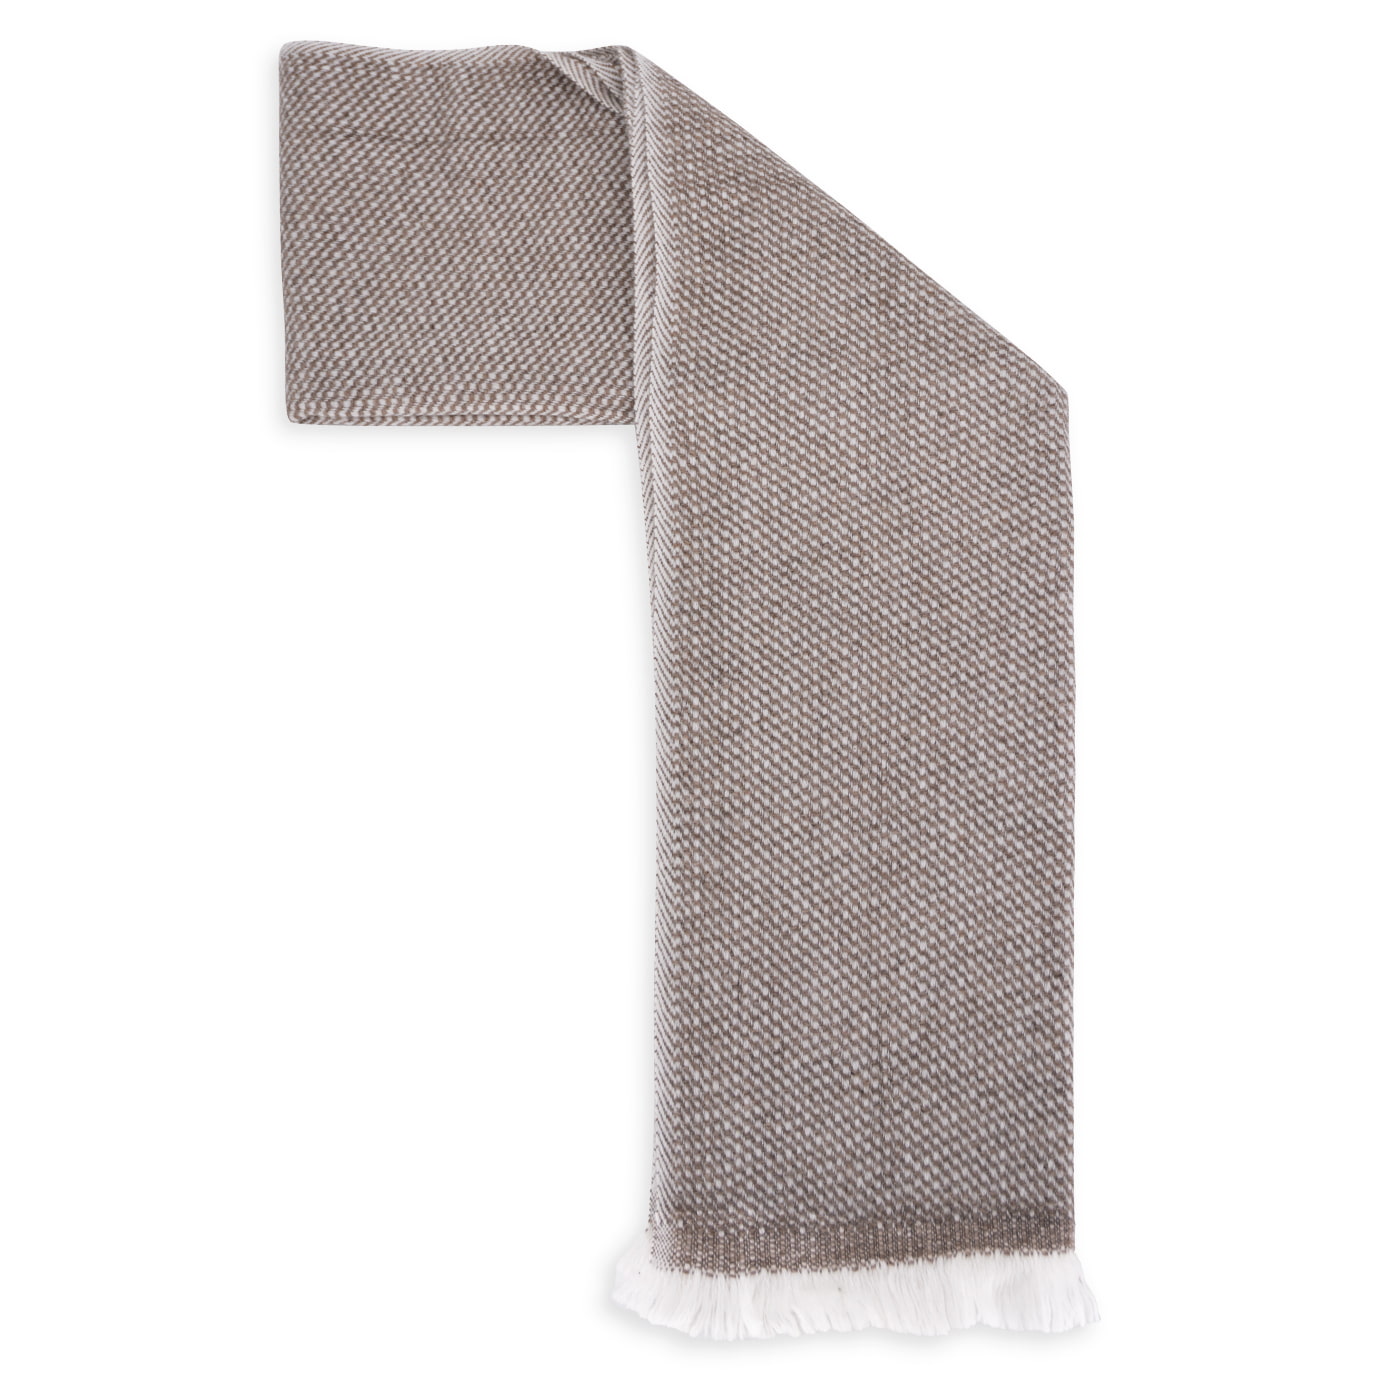 Schal aus Kaschmir und Woll für Mann und Frau 40 x 190 cm - Eisbraun / Weiß